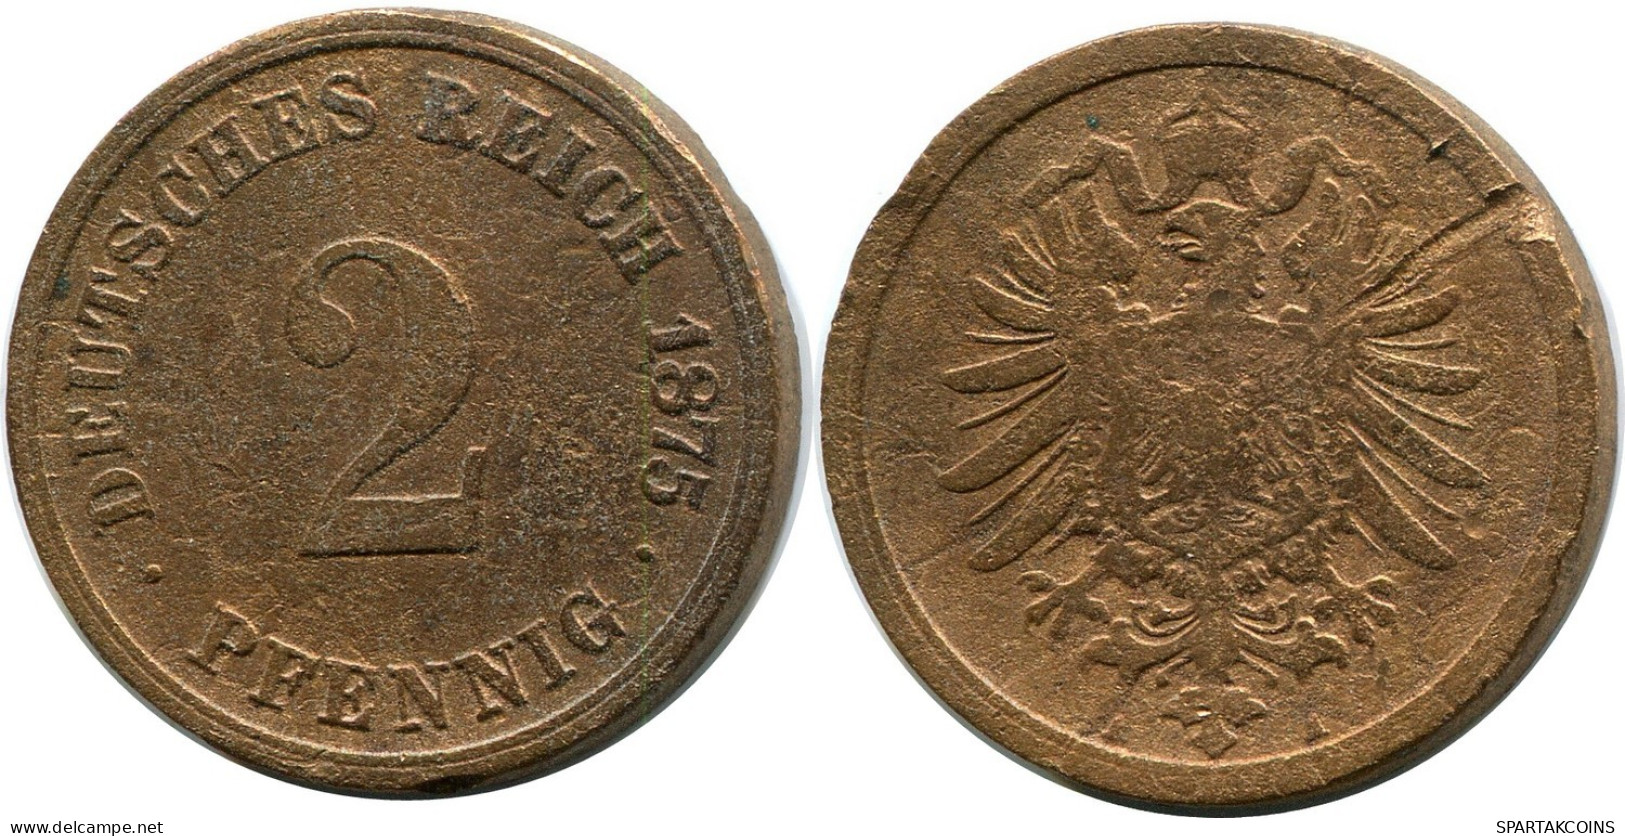 2 PFENNIG 1875 A GERMANY Coin #DB826.U.A - 2 Pfennig